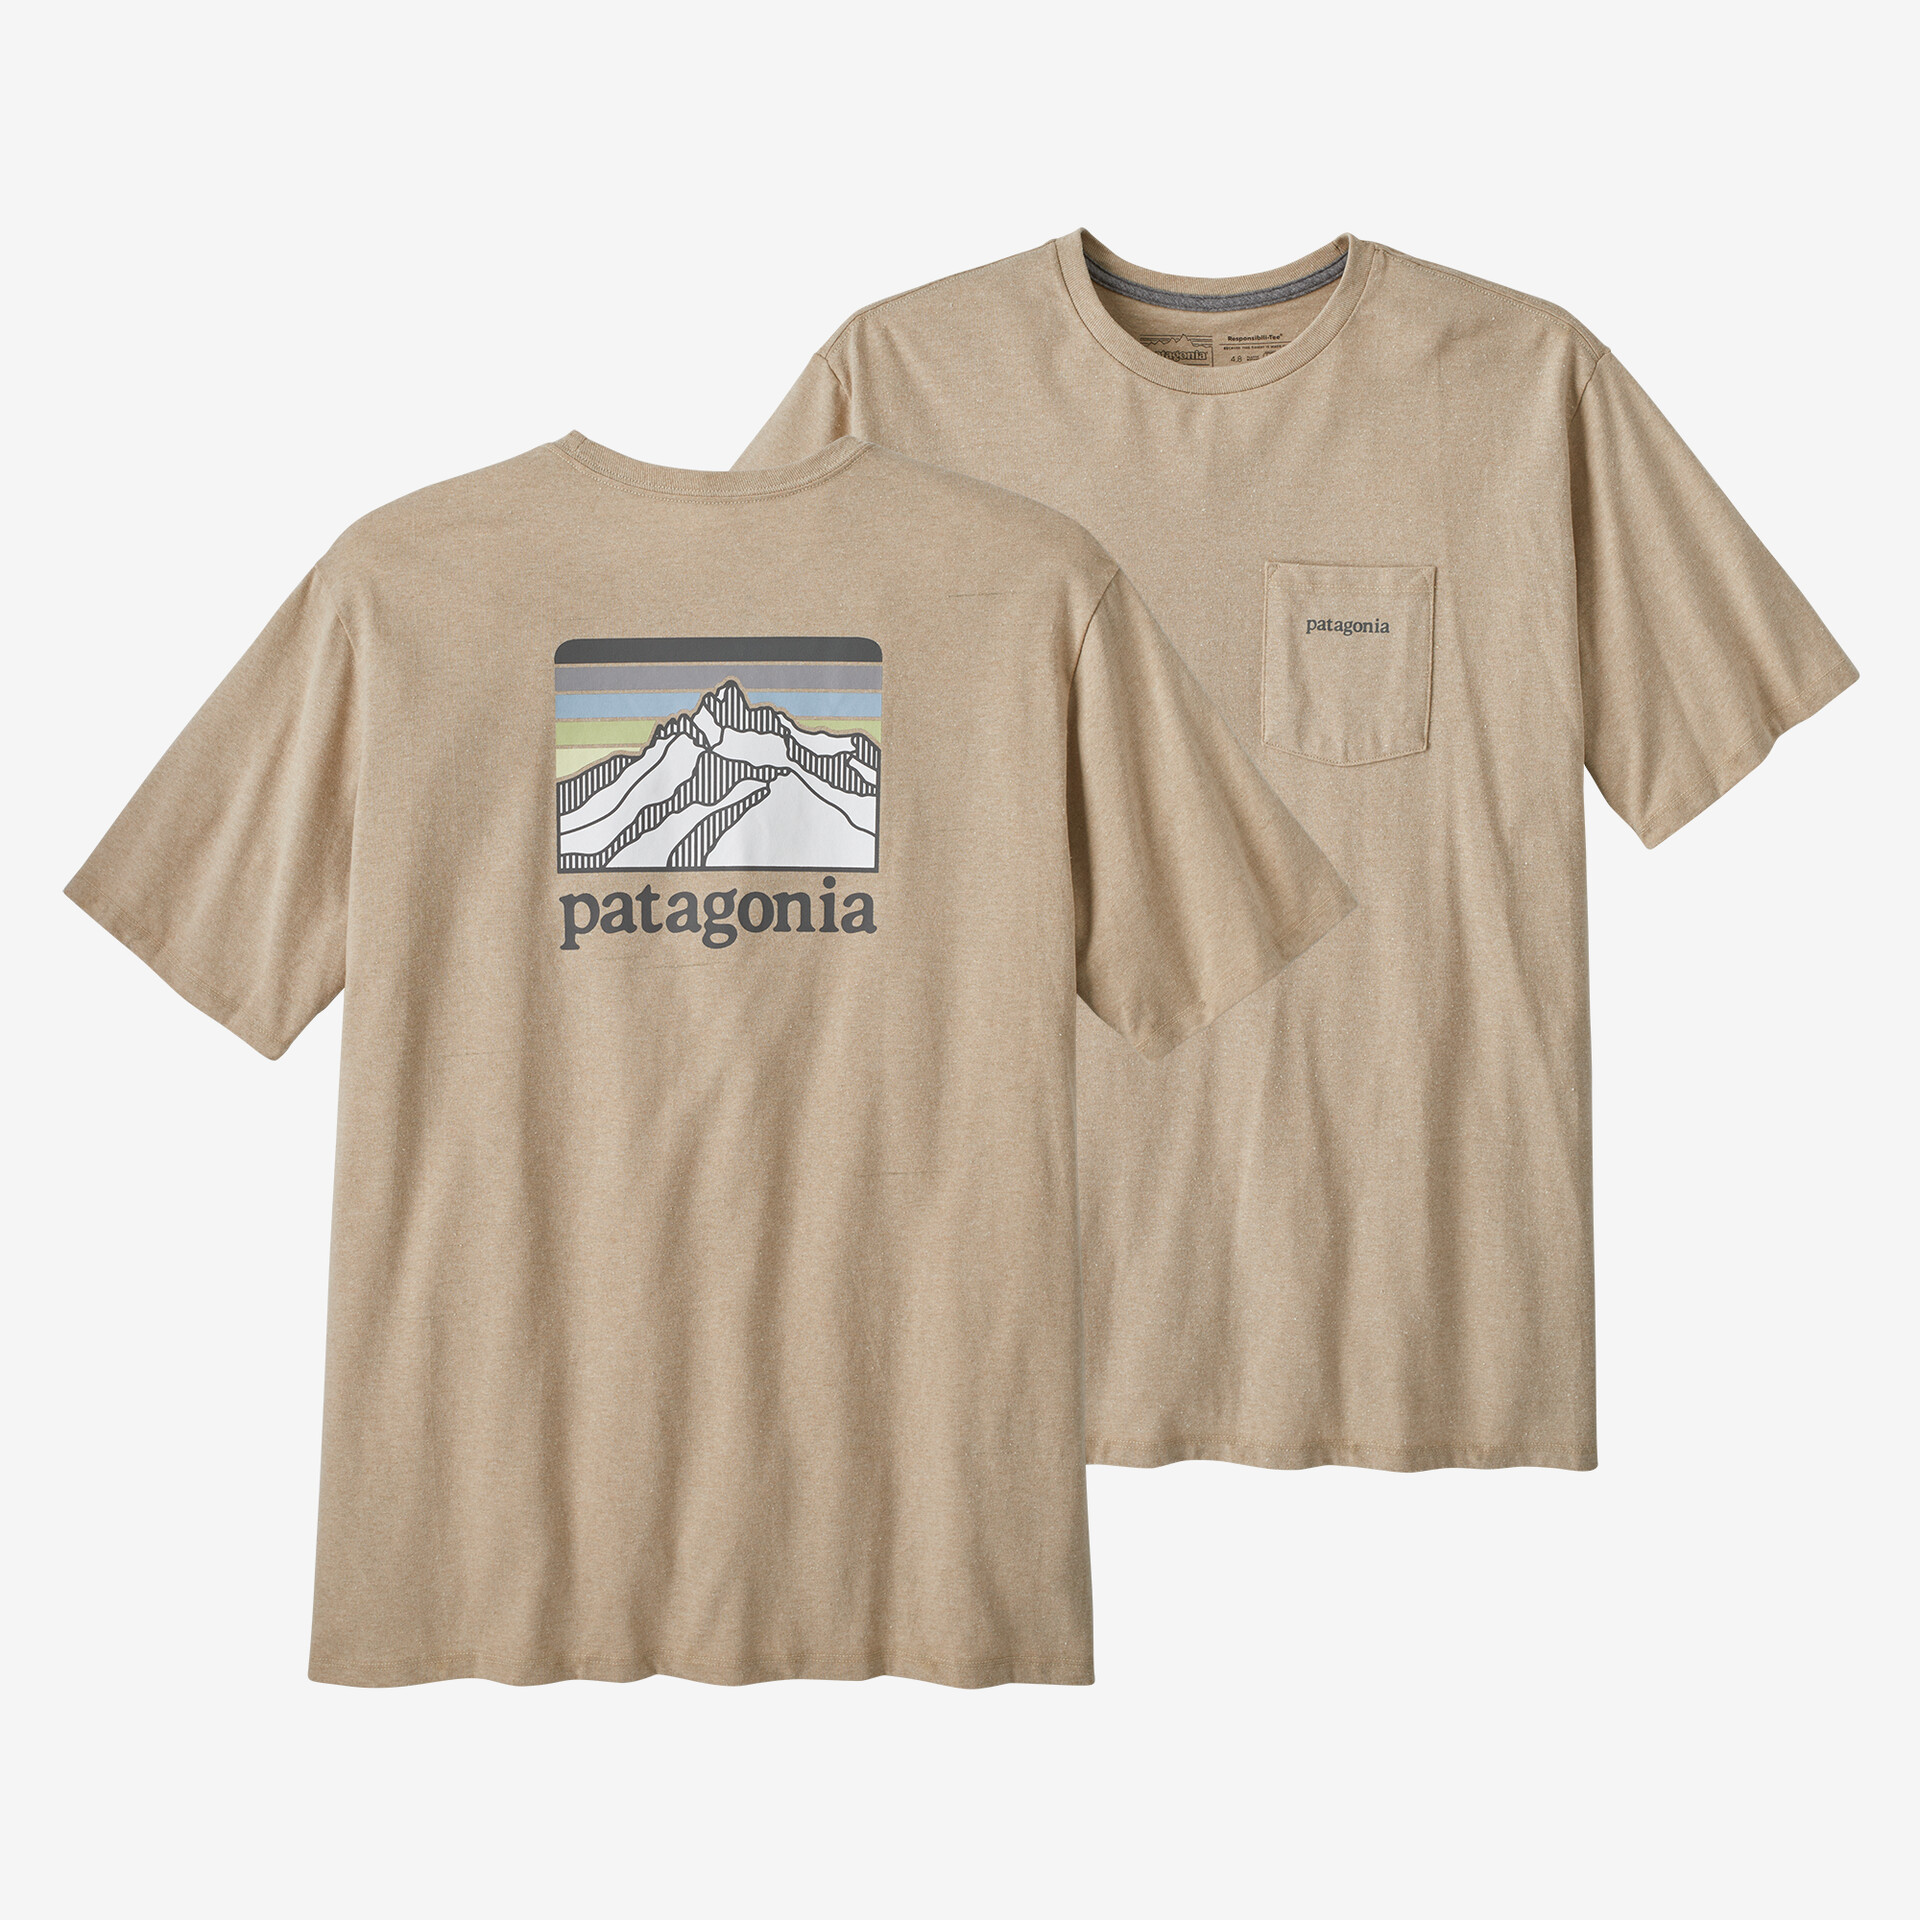 Мужская ответственная футболка с логотипом и карманом Patagonia, цвет Oar Tan мужская ответственная футболка с логотипом и карманом patagonia черный